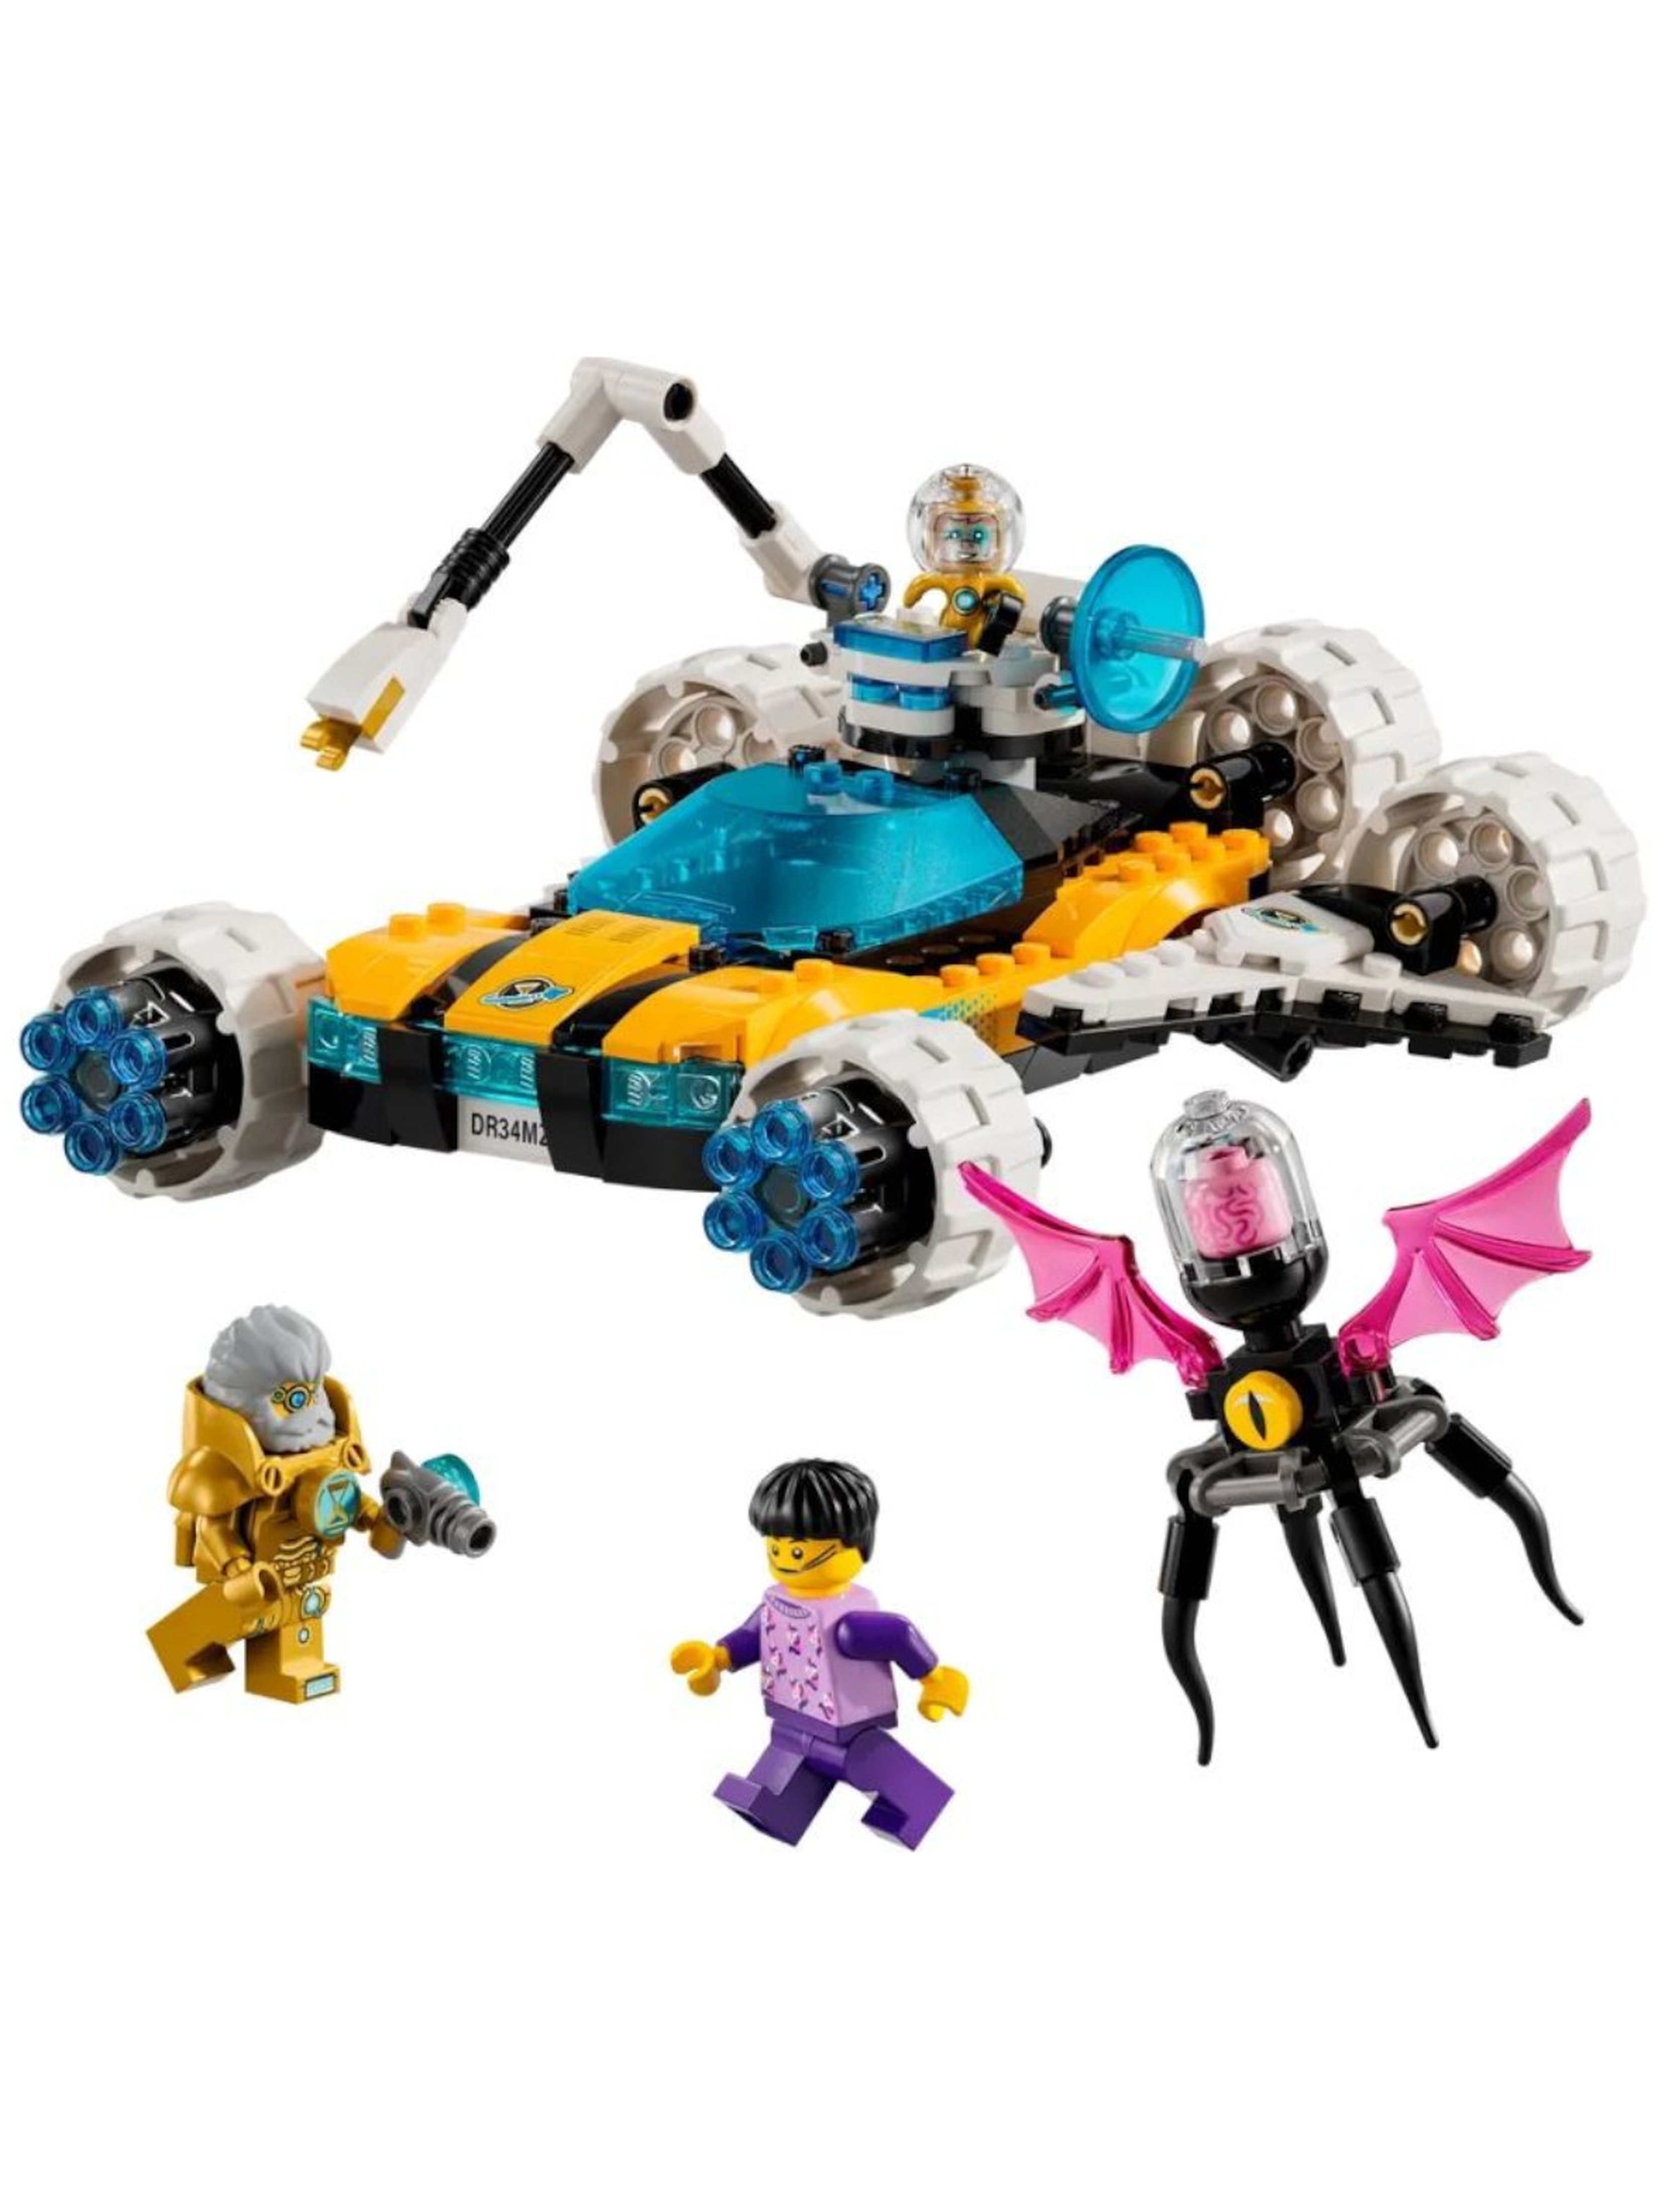 LEGO Klocki DREAMZzz 71475 Kosmiczny samochód pana Oza